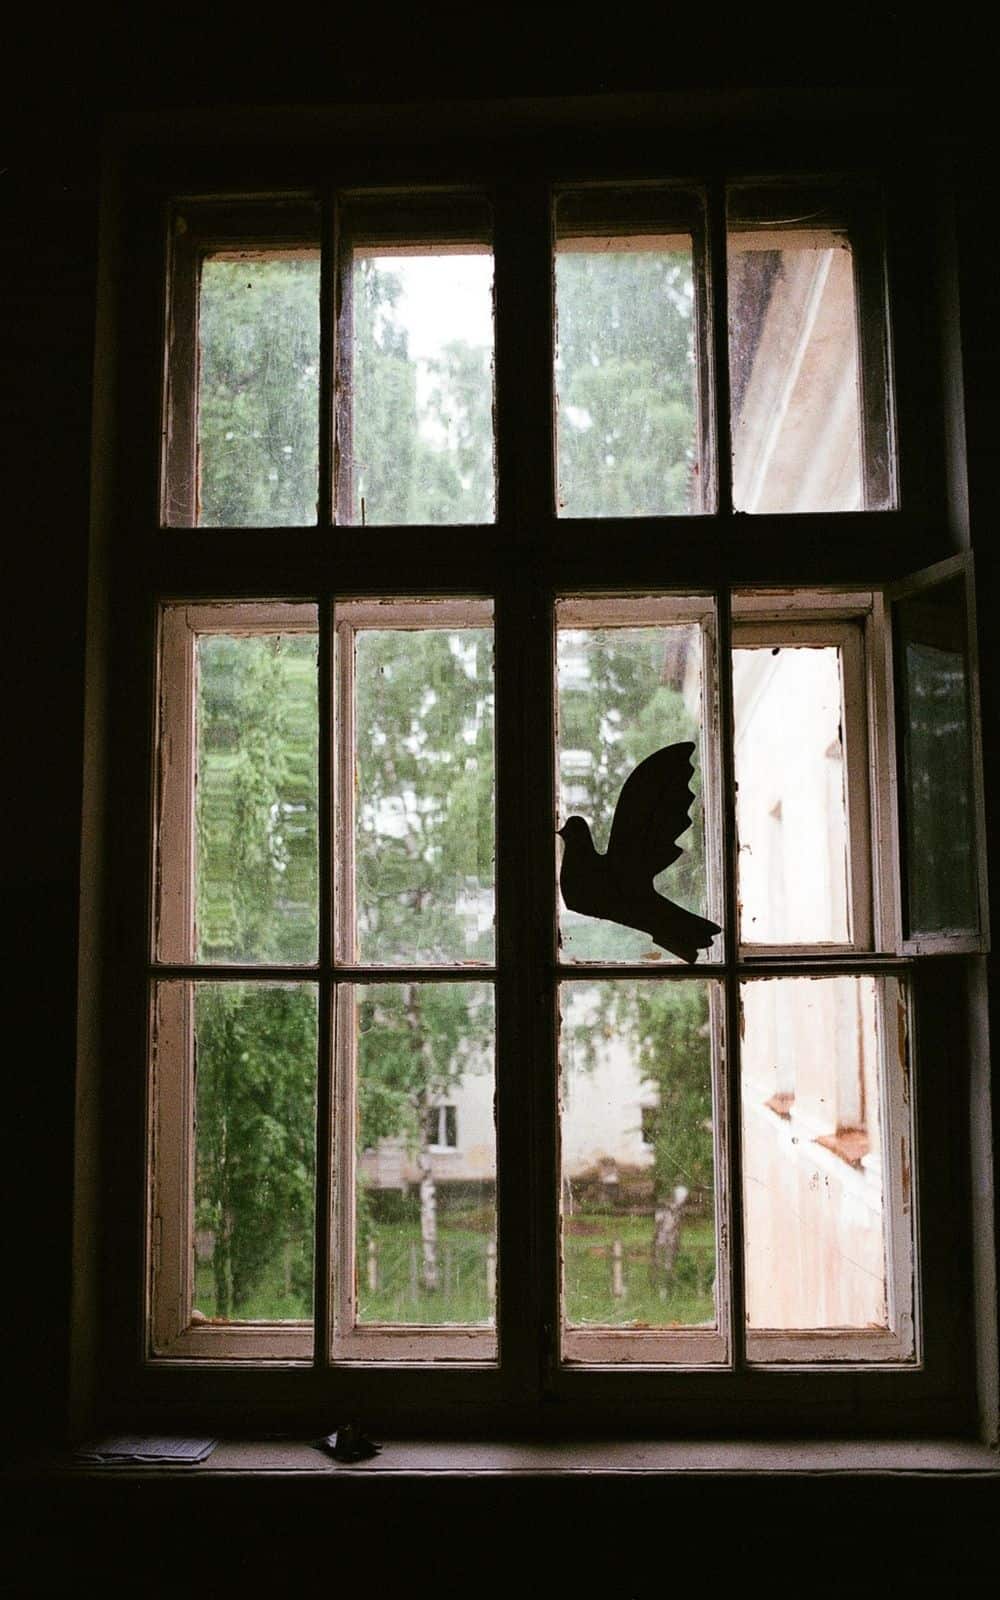  Apa Artinya Ketika Seekor Burung Menabrak Jendela Anda? (8 Makna Spiritual)